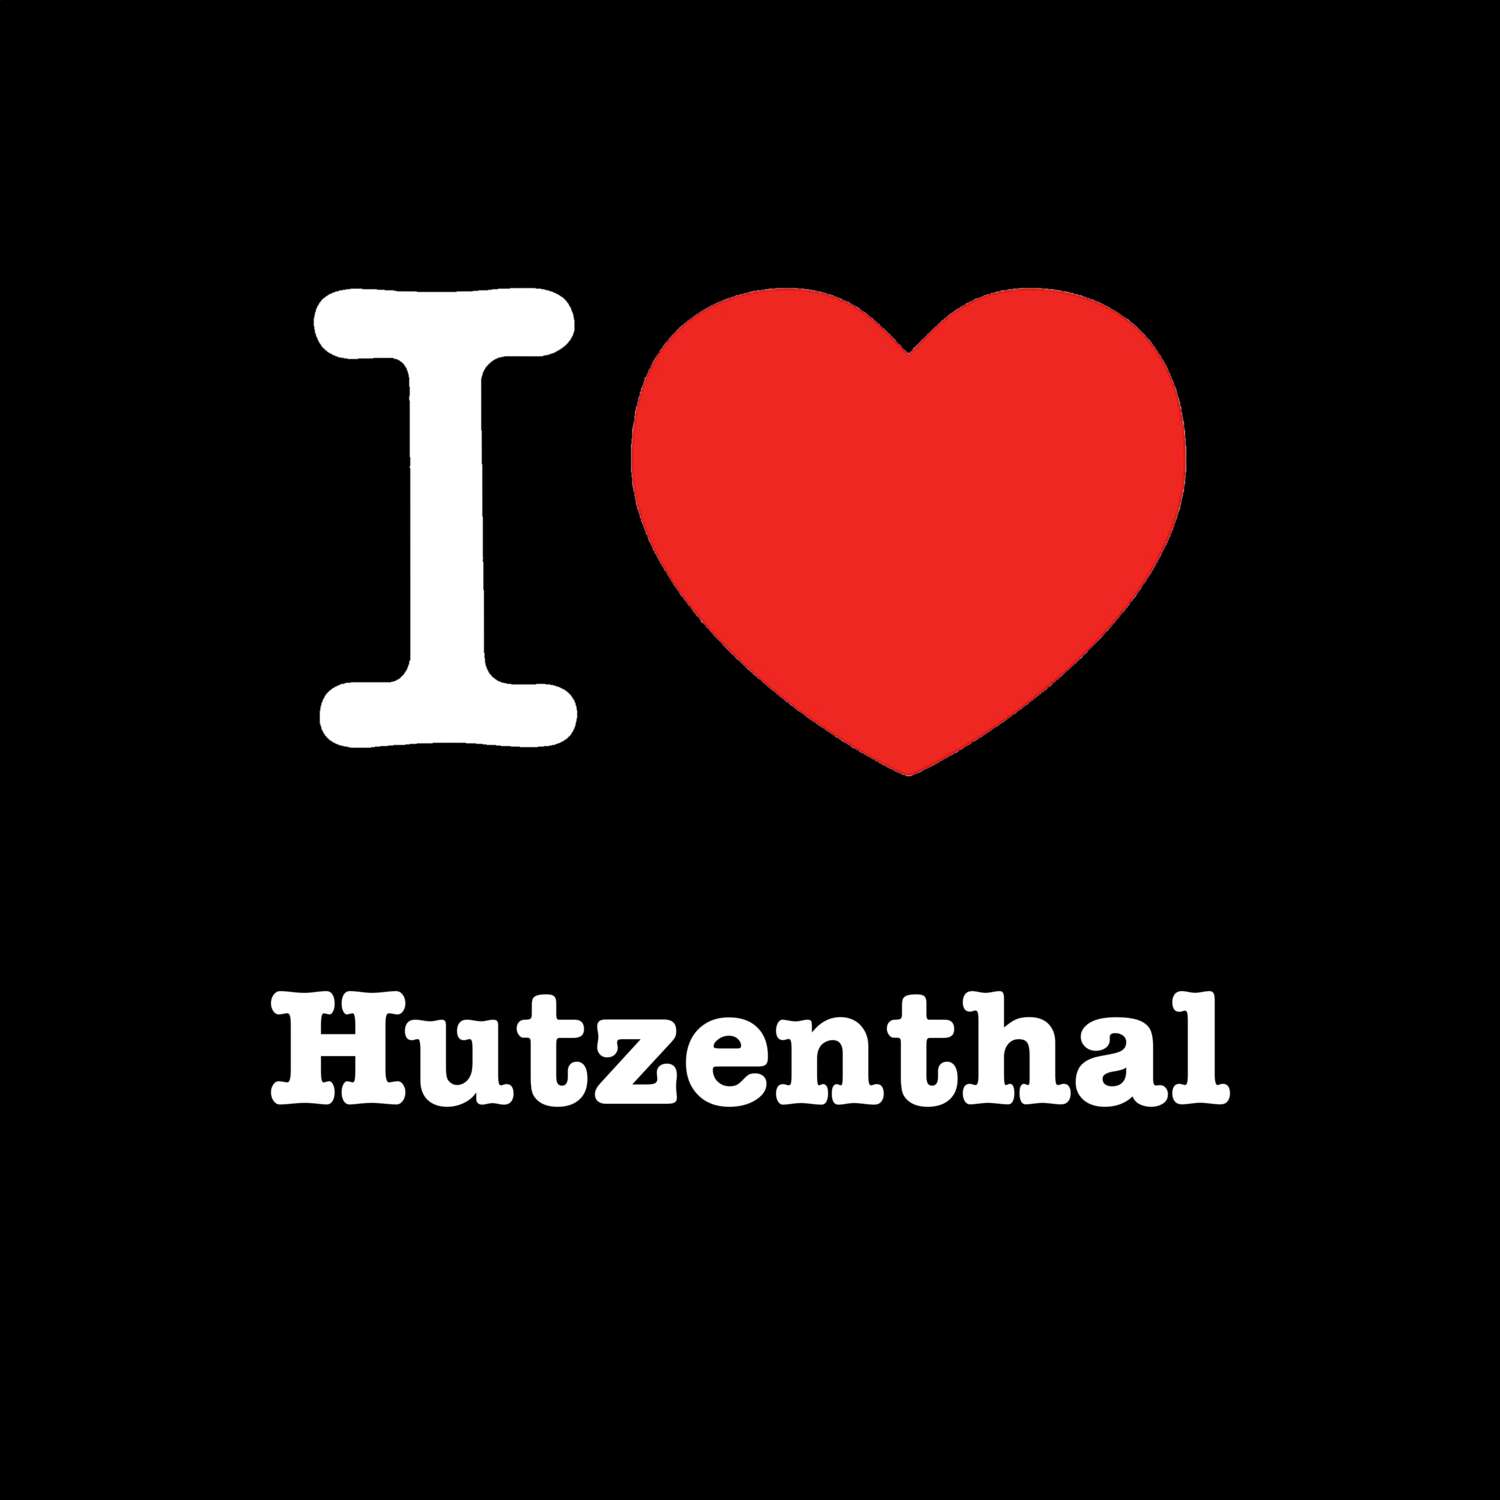 Hutzenthal T-Shirt »I love«